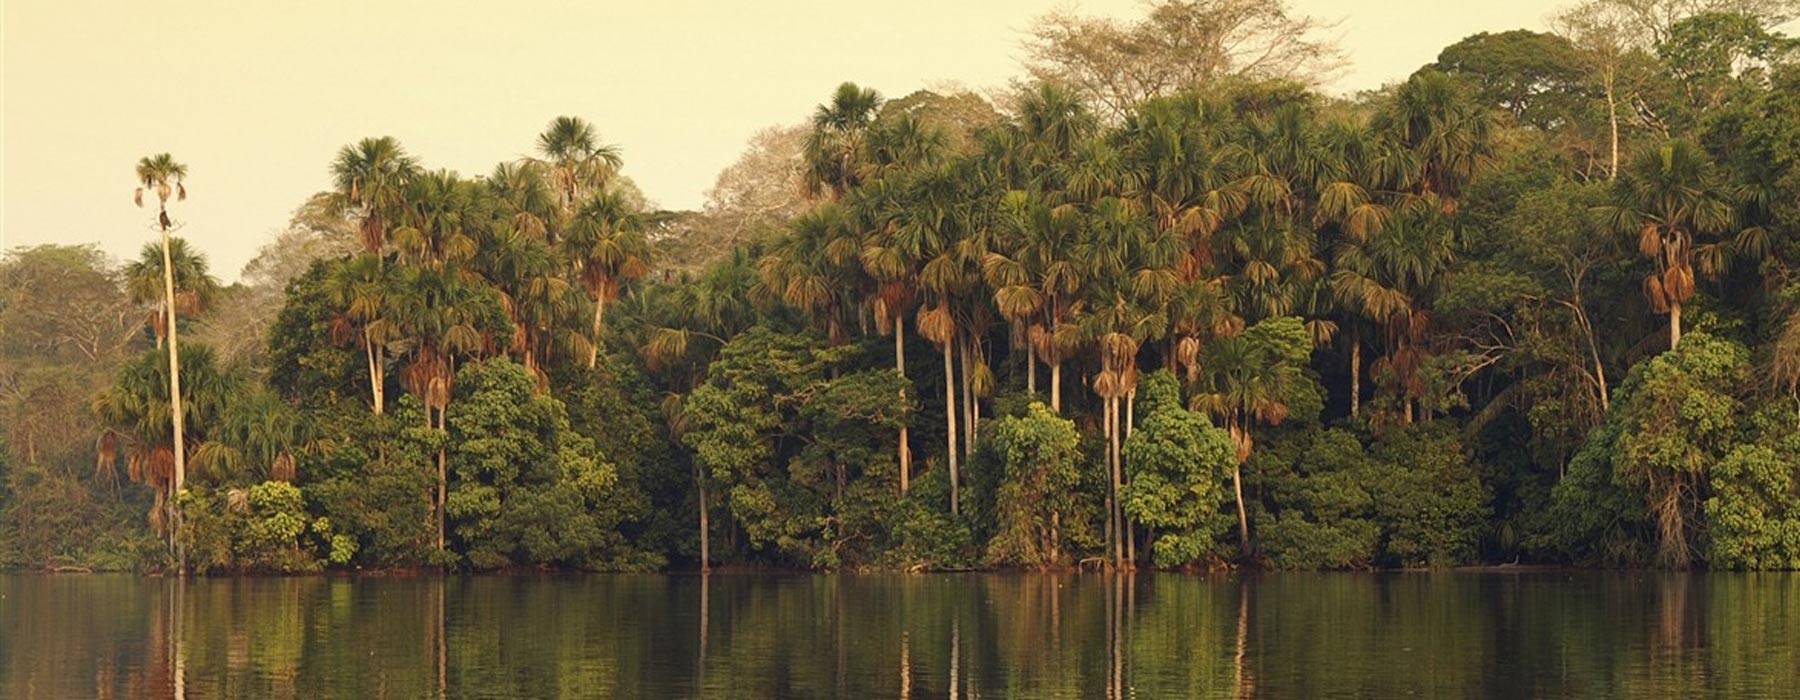  Peruvian Amazon Holidays